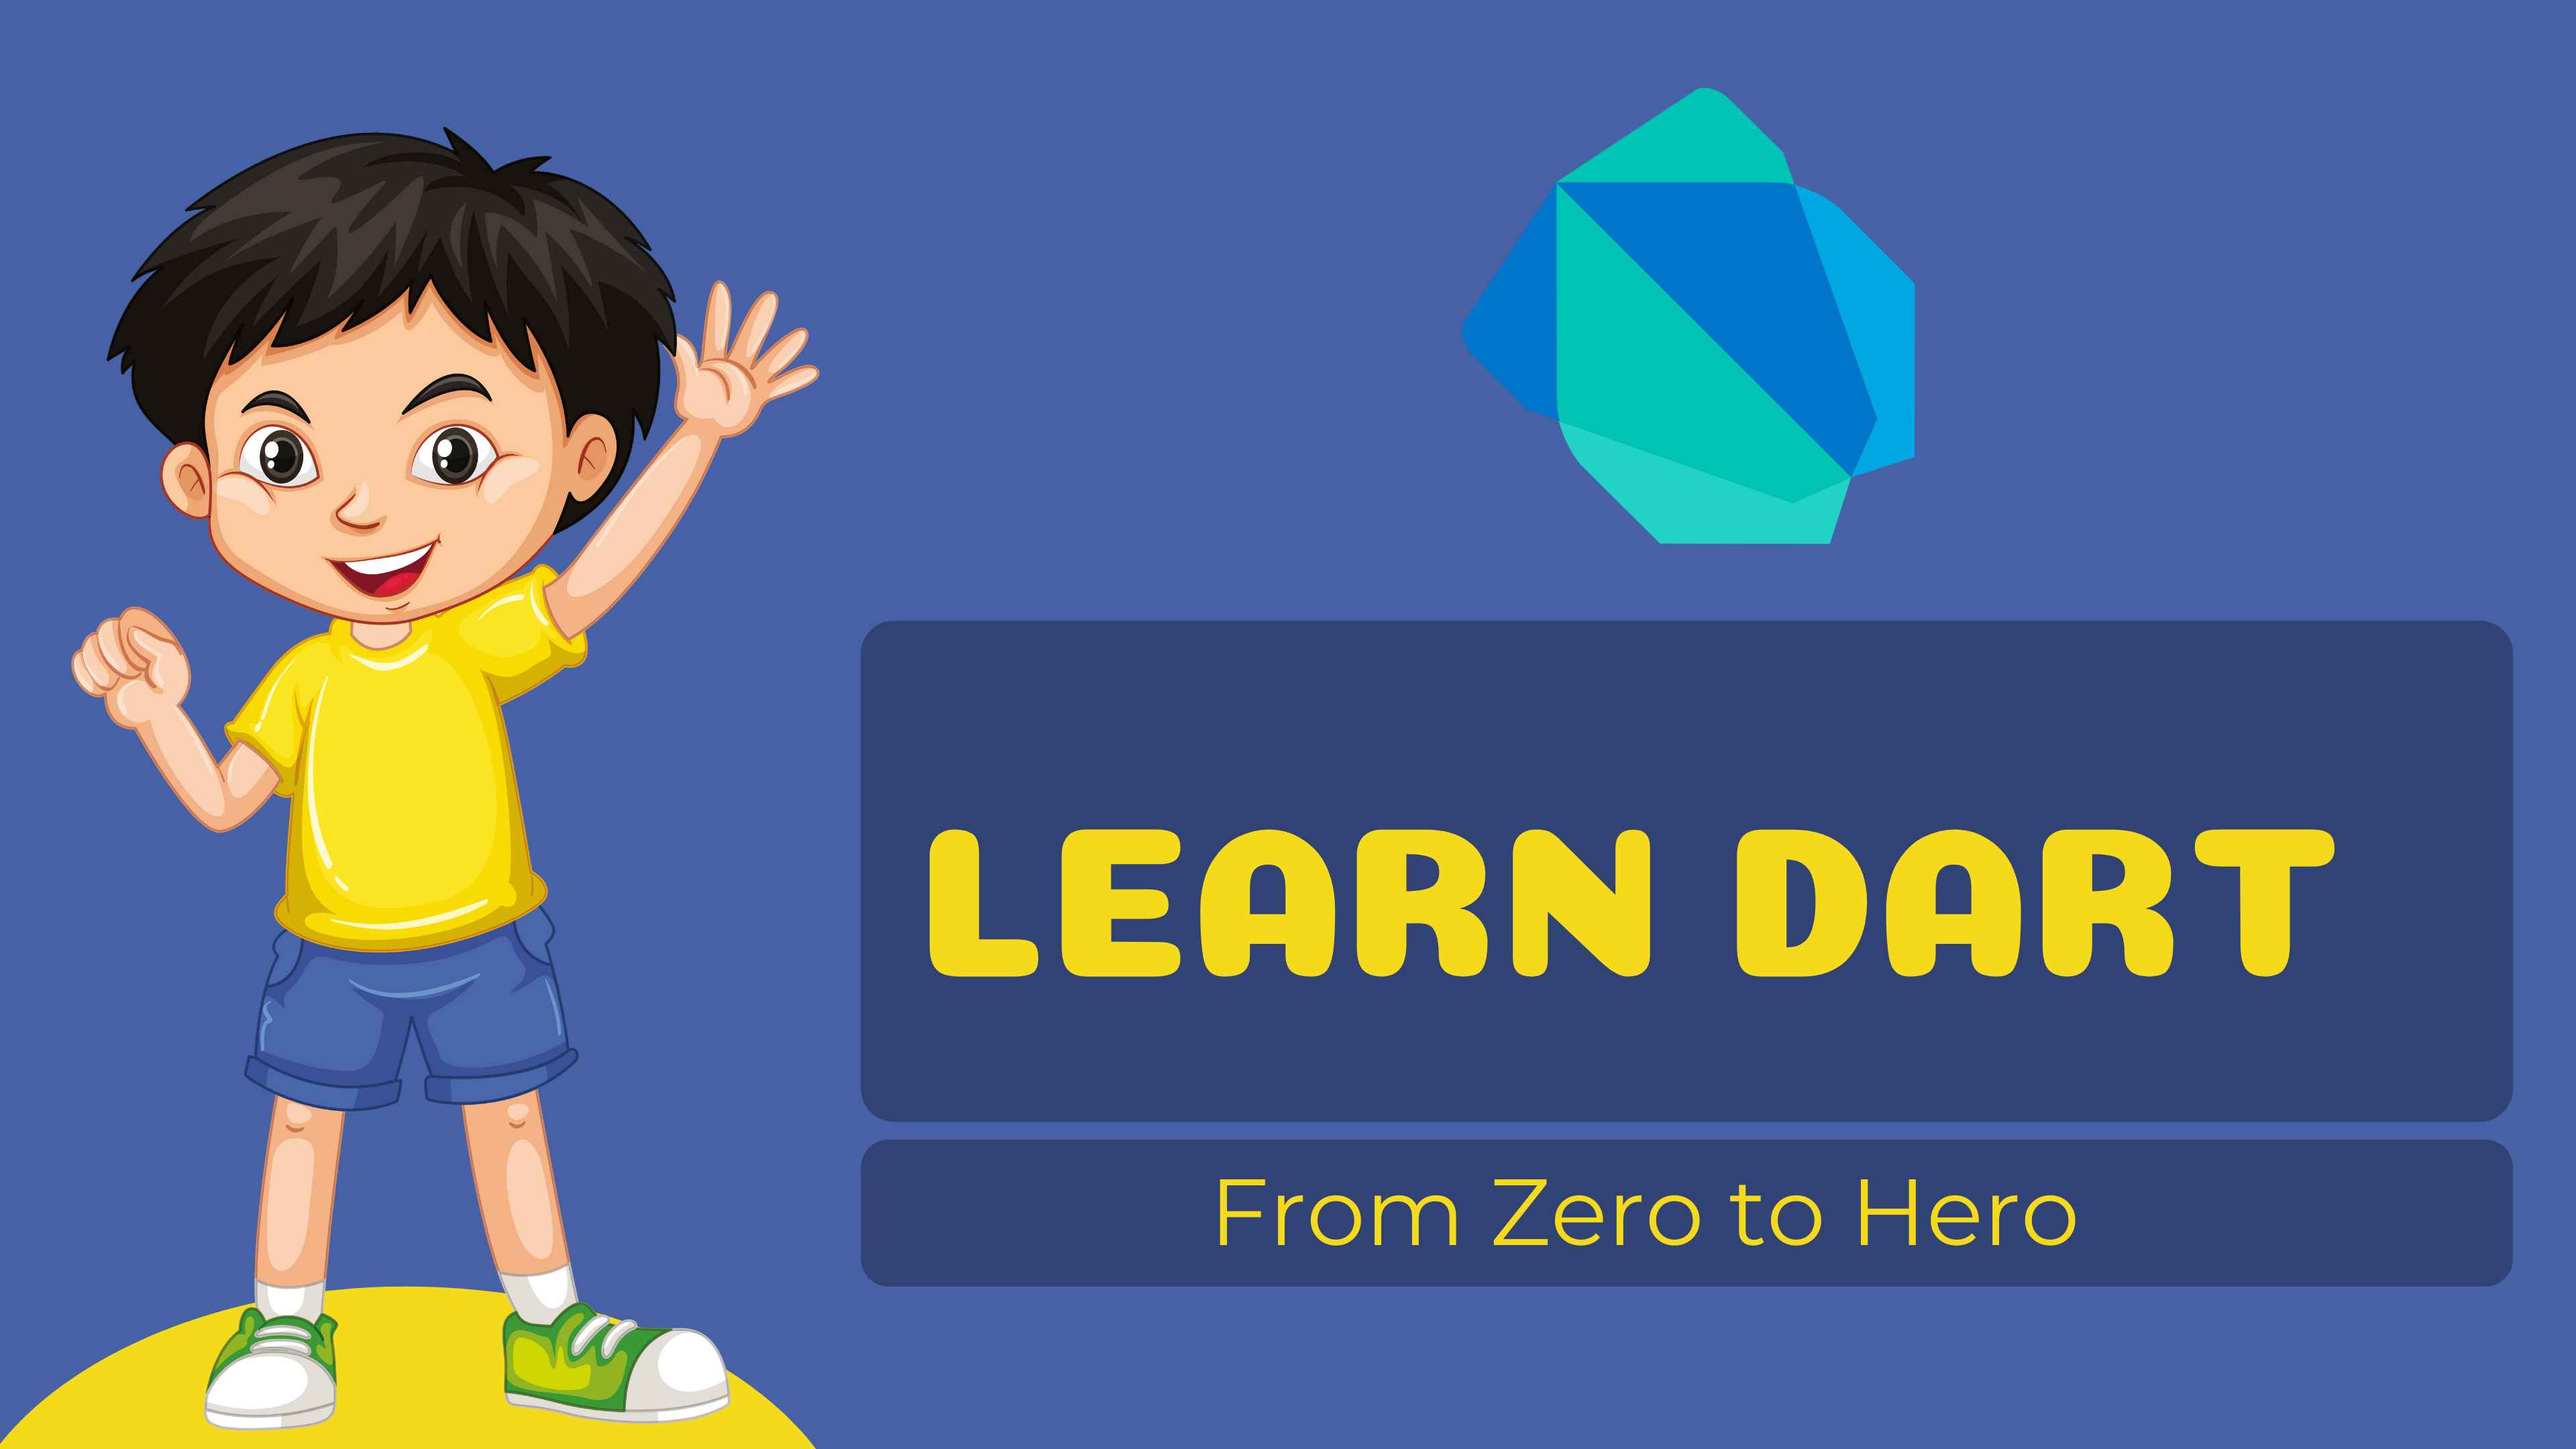 Learn Dart Programming